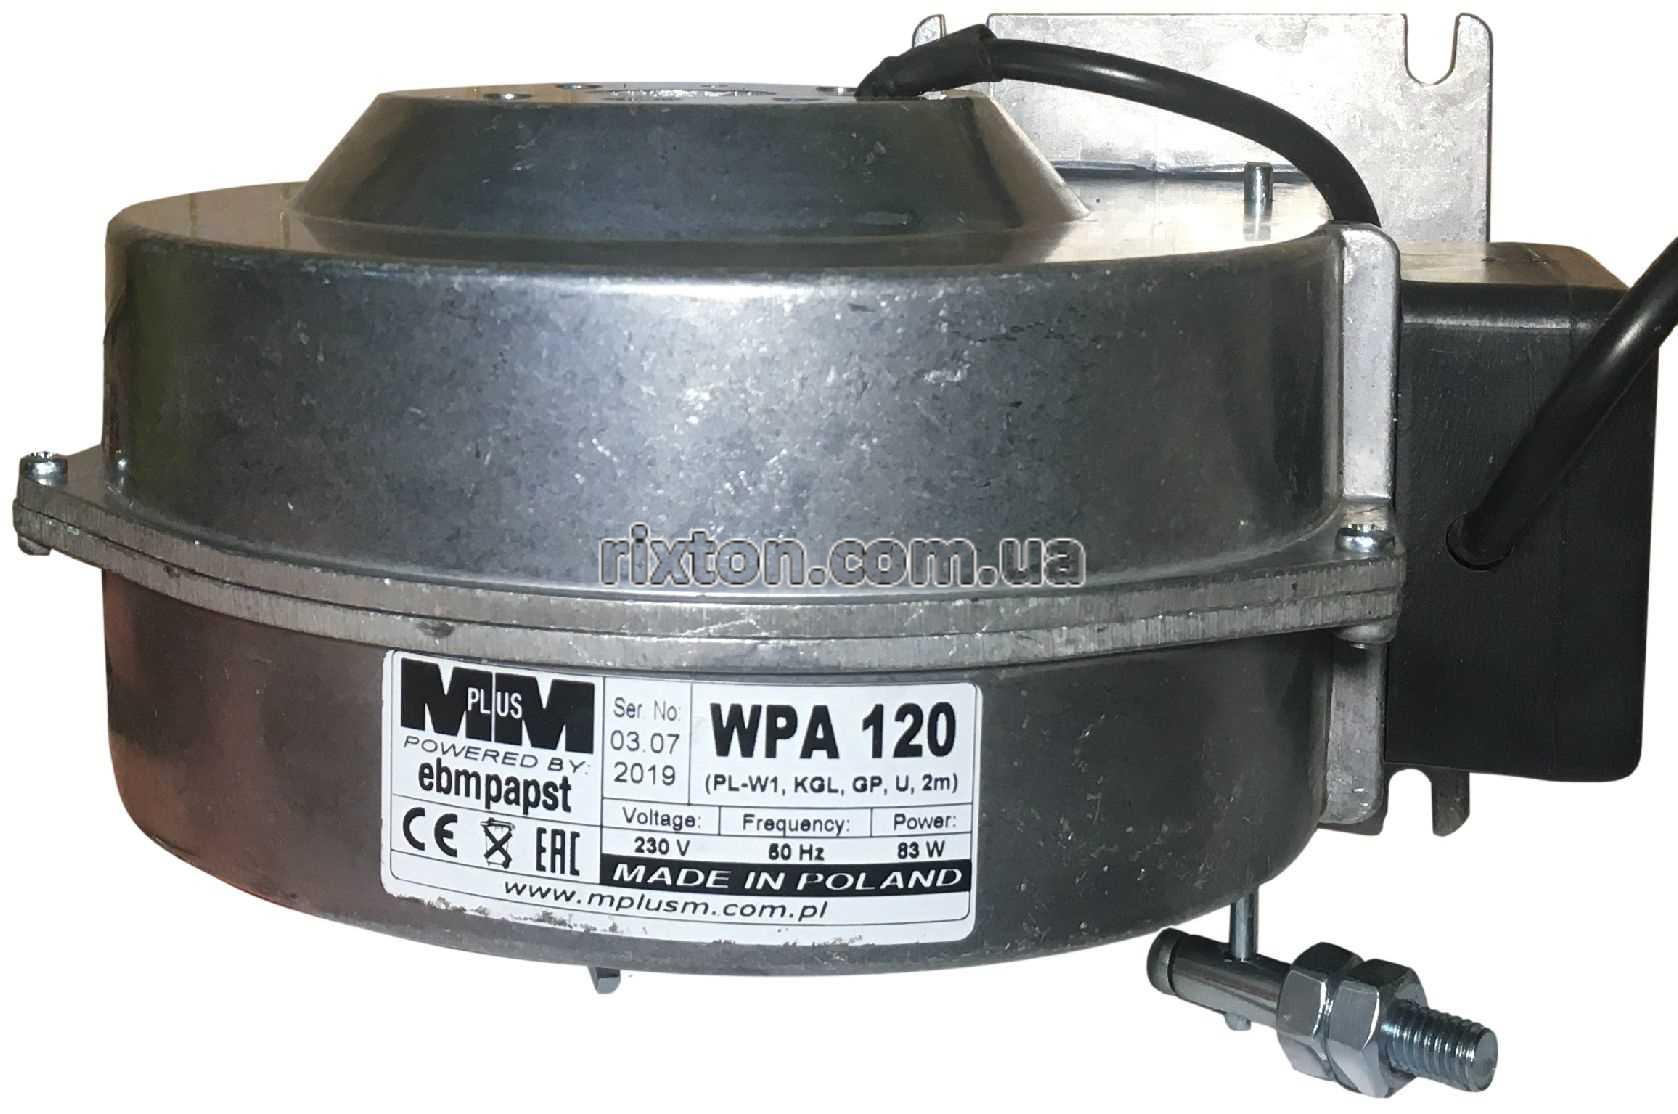 Нагнітальний вентилятор MplusM WPA 120 з діафрагмою (EBM, PL(W1), KGL, GP, U, 2,0м)